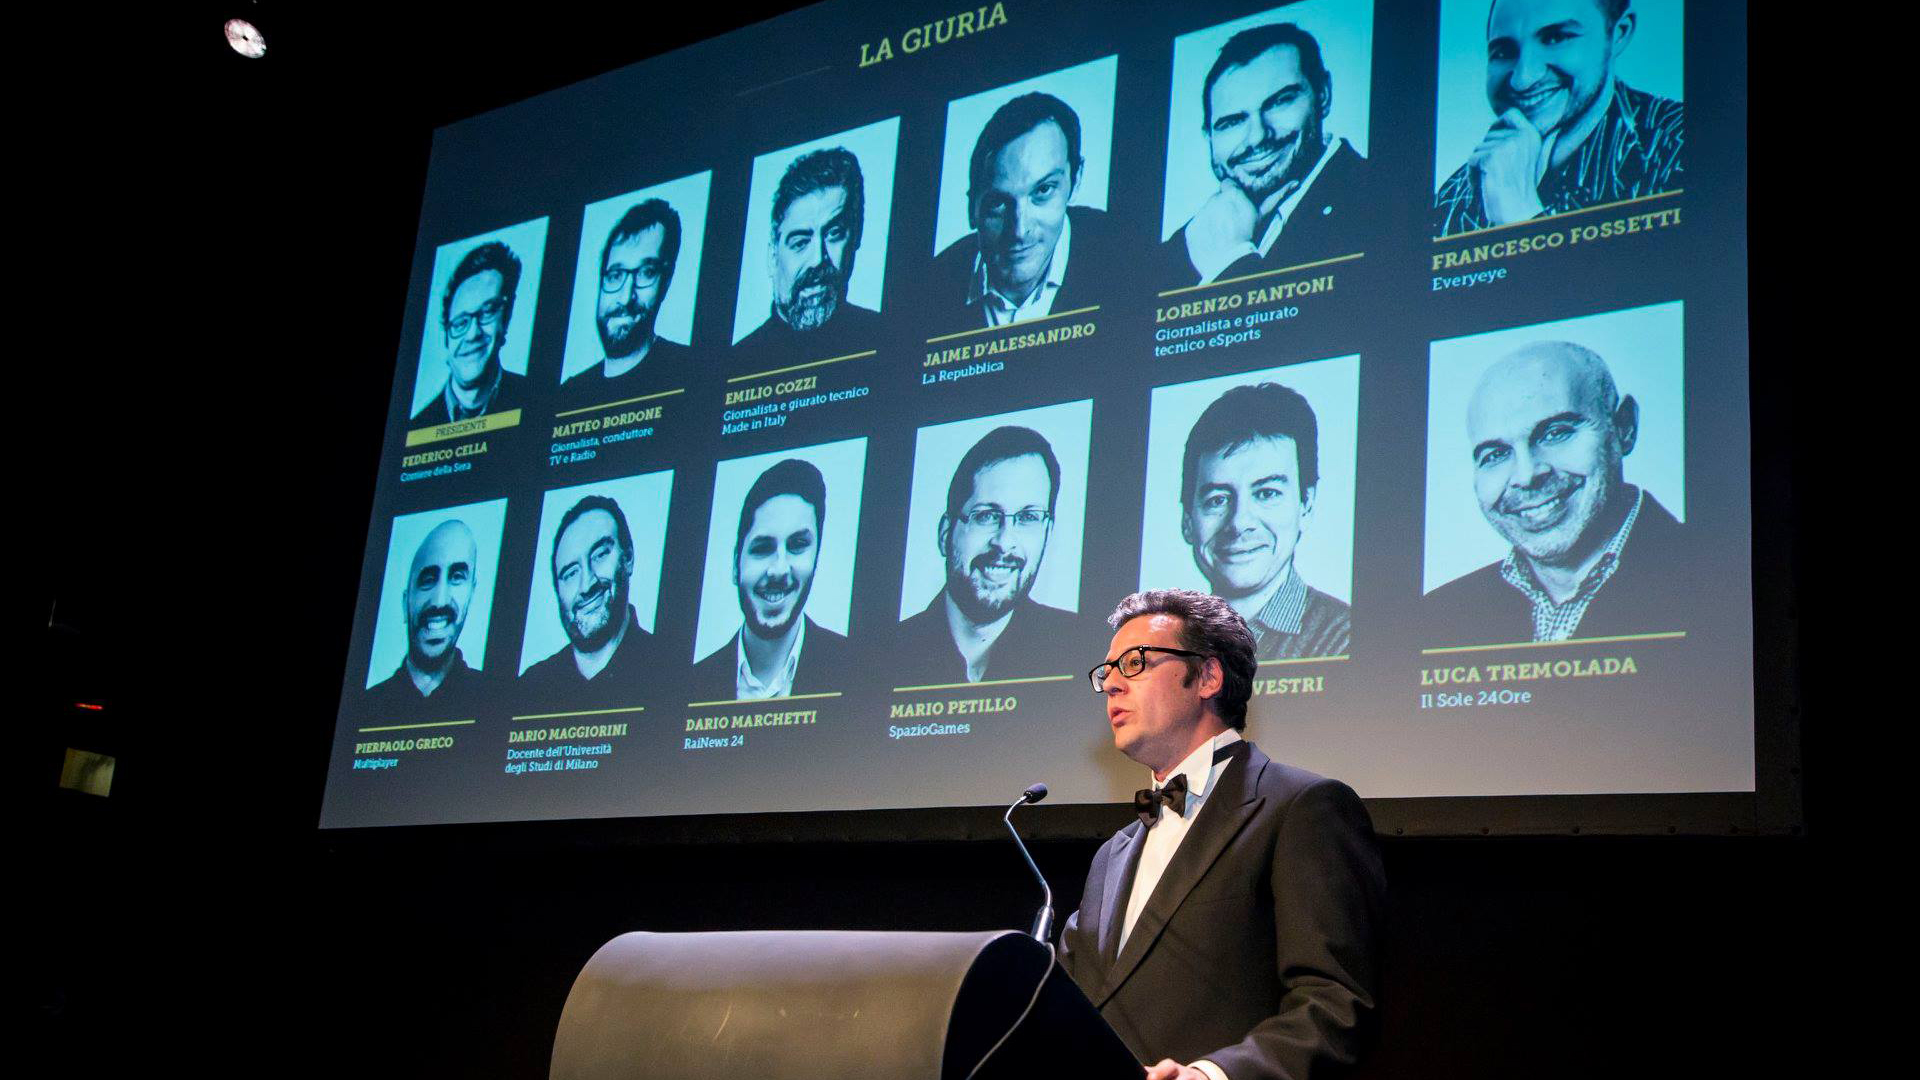 Il presidente Federico Cella presenta gli altri componenti della giuria (foto di Aesvi)